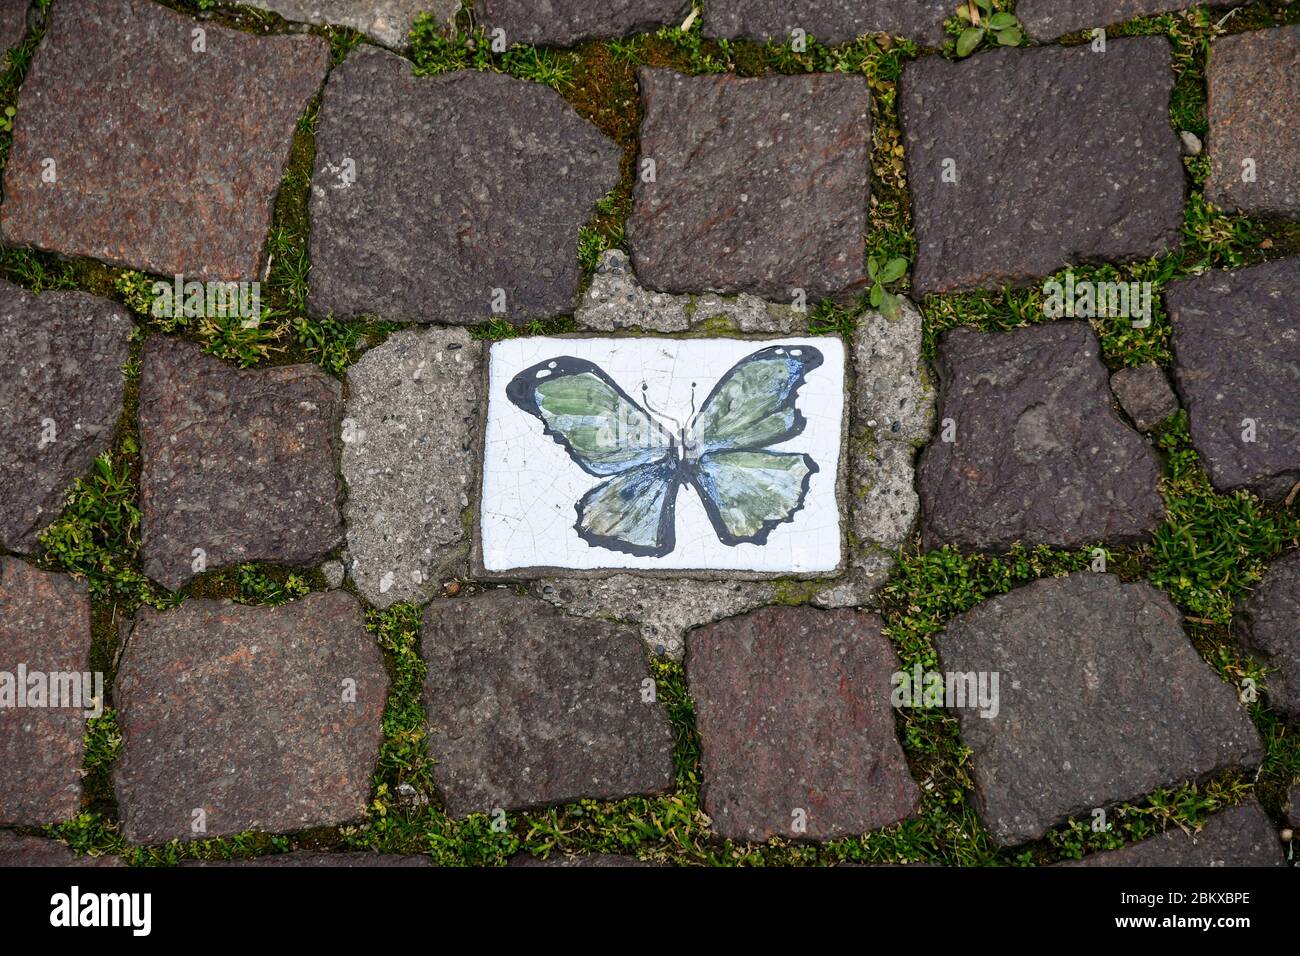 Primo piano di un pavimento in strada a cubetti di porfido nel centro storico di Bardolino con una decorazione dipinta a mano raffigurante una farfalla blu, Verona, Italia Foto Stock